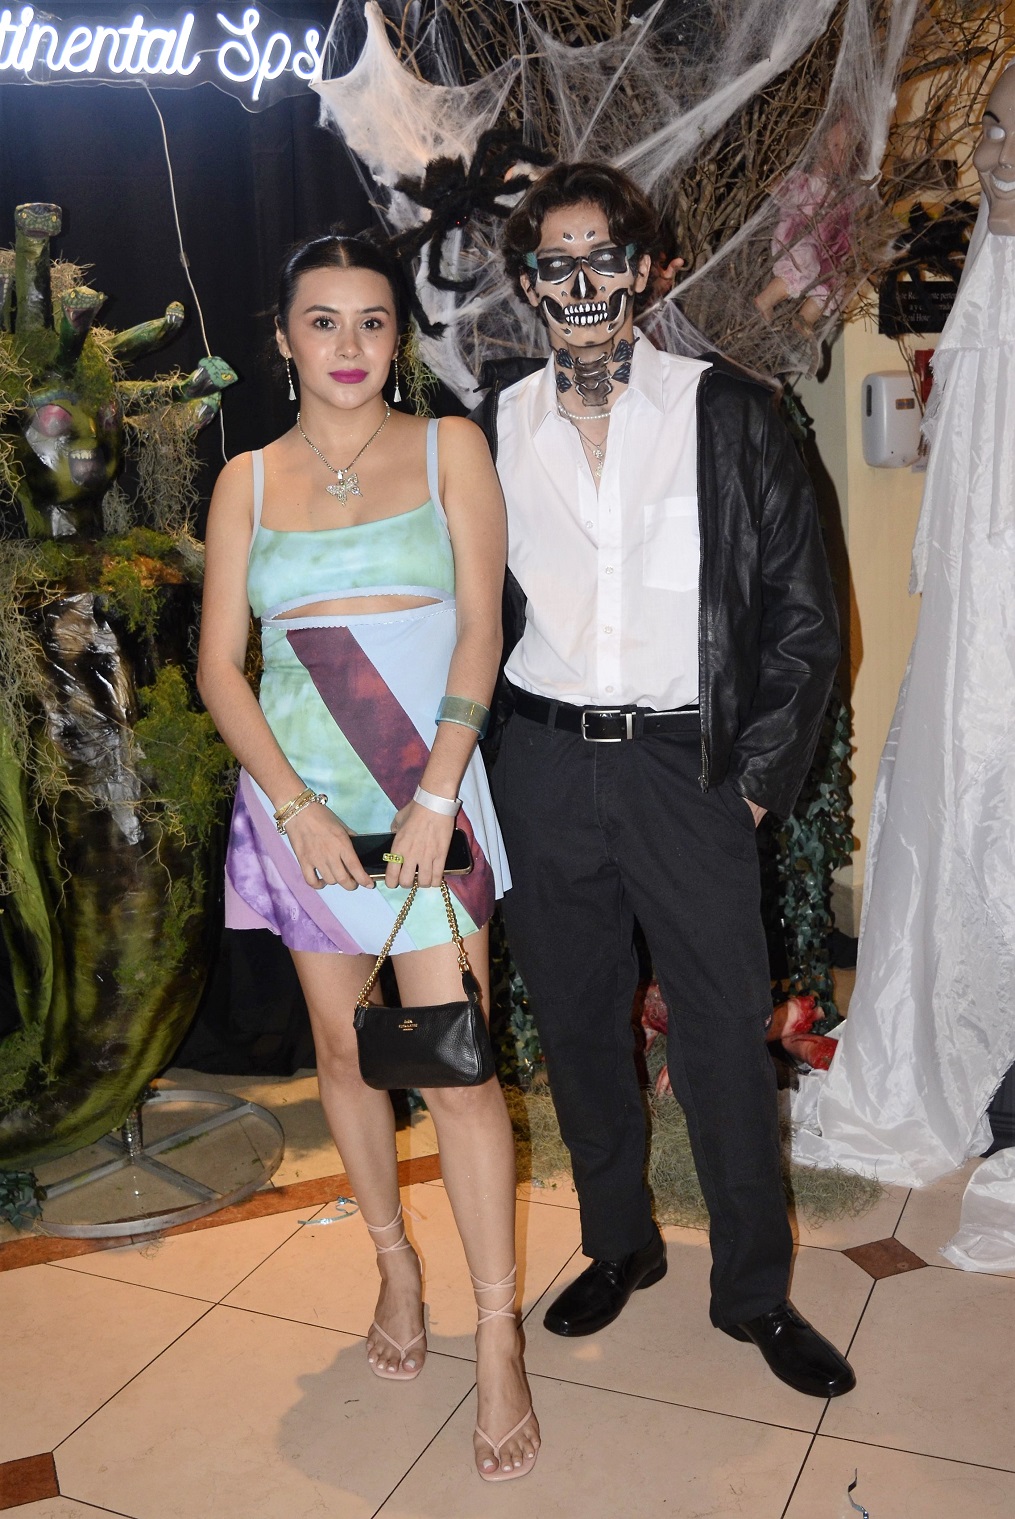 Mucha diversión en fiesta Halloween en San Pedro Sula